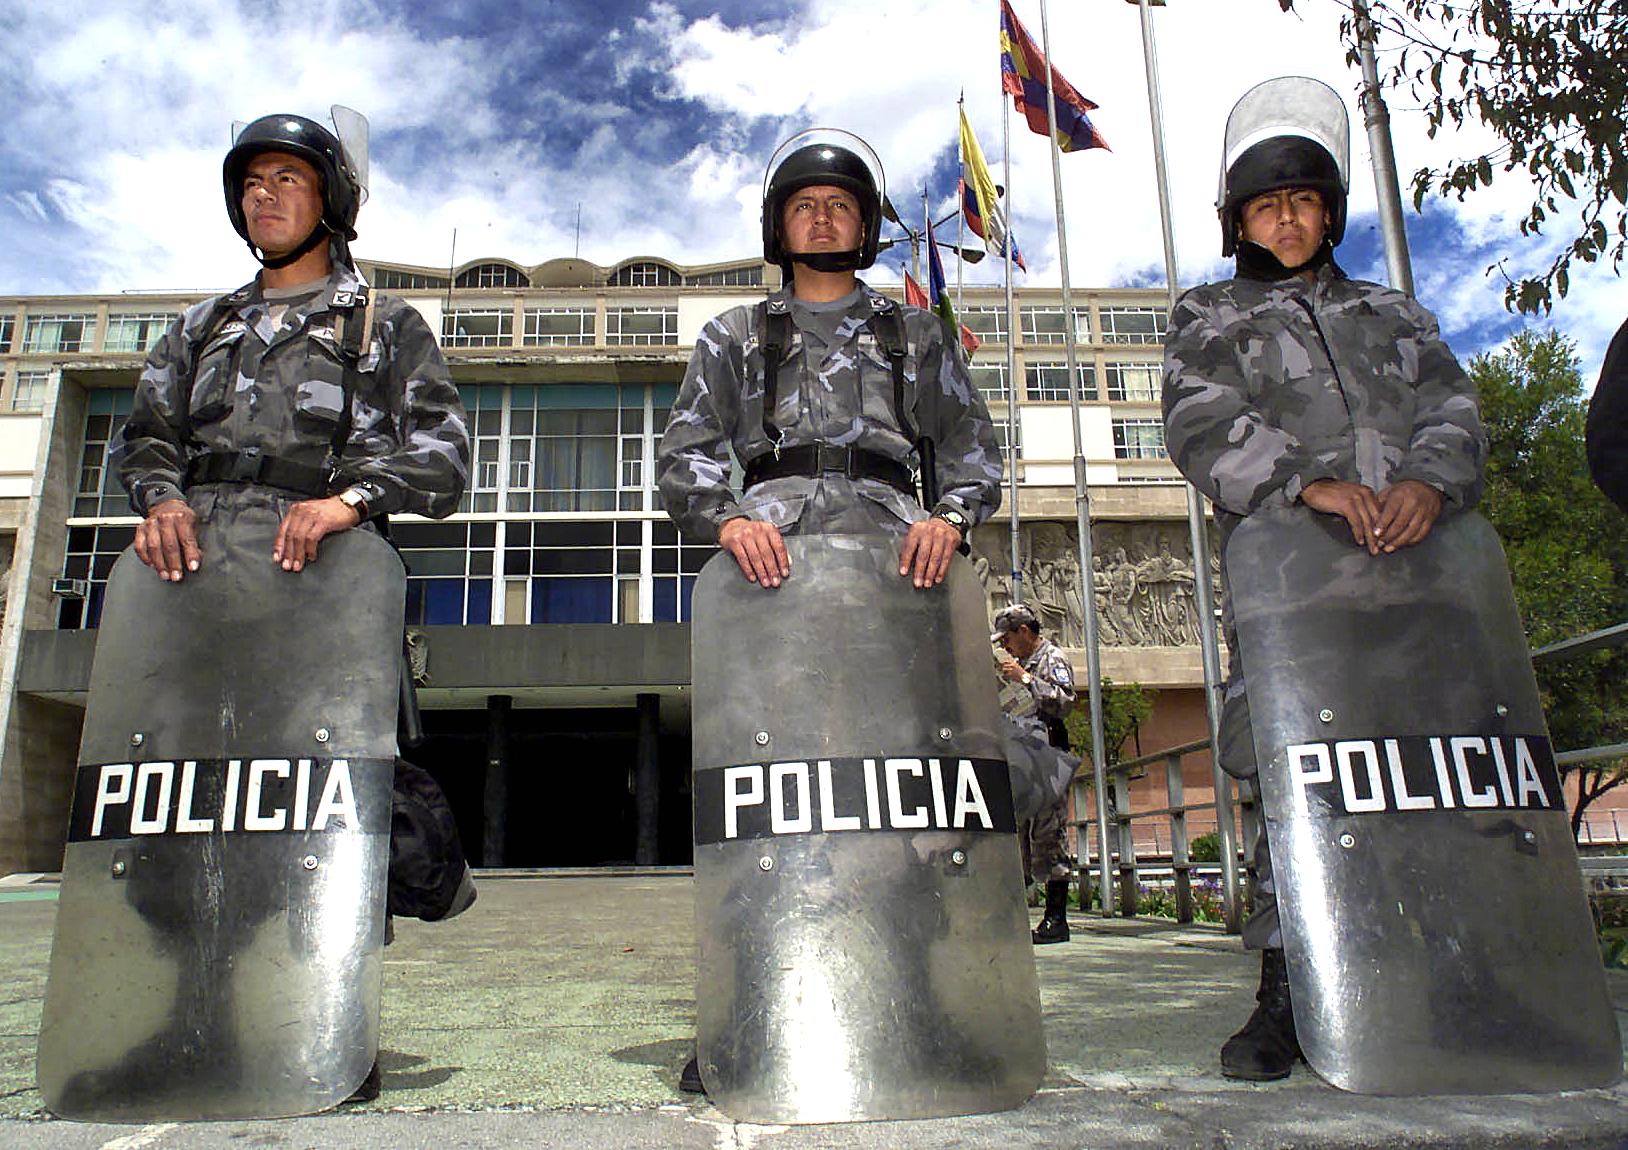 Έγκλημα στον Ισημερινό: Μακάβρια ανακοίνωση από την Αστυνομία - «Βρήκαμε τρία κομμένα κεφάλια»